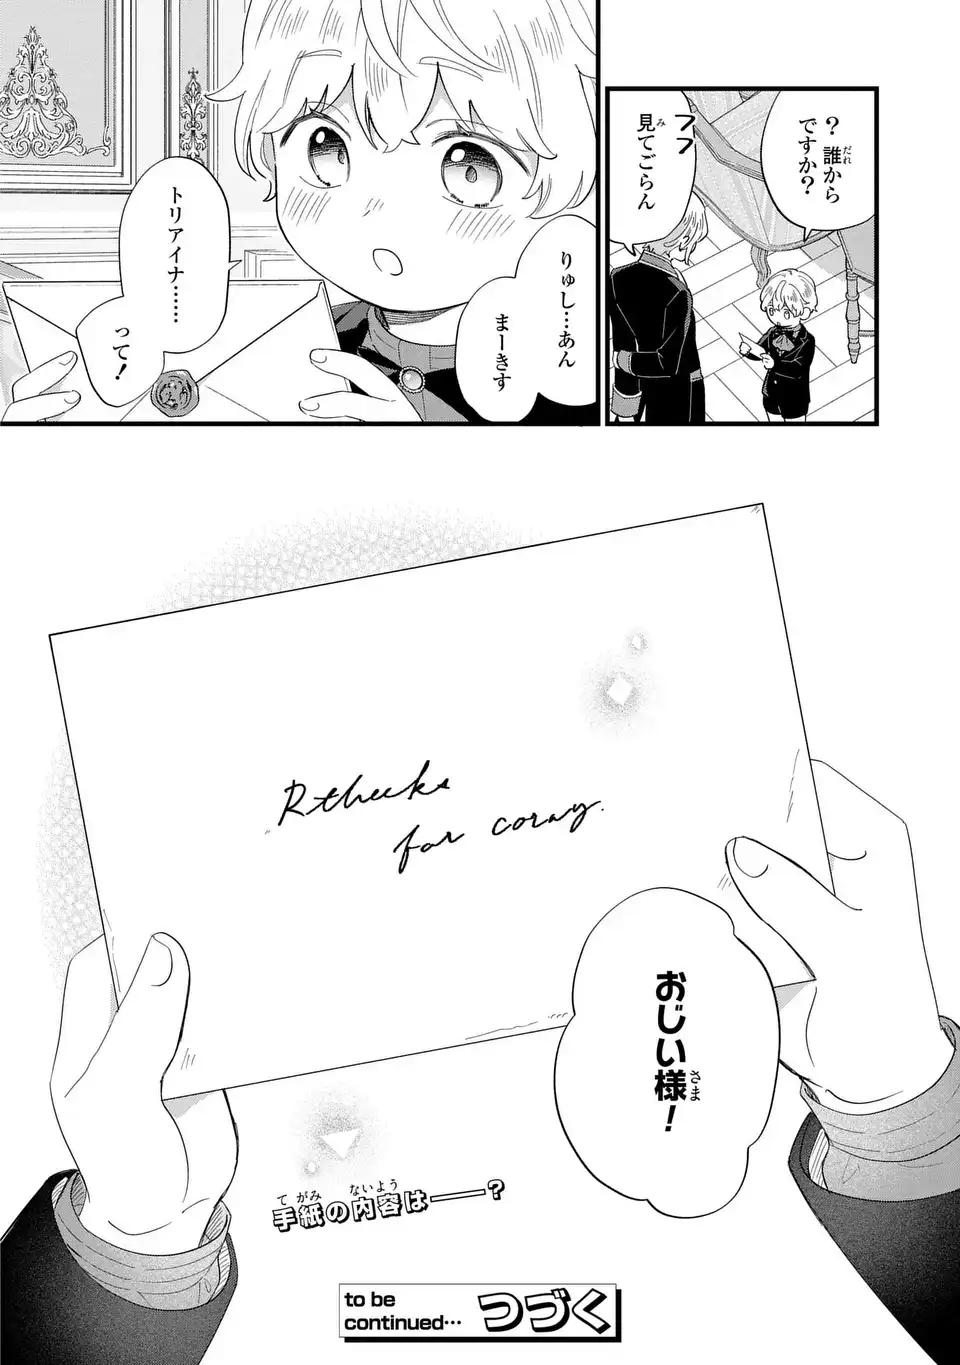 Akuyaku no Goreisoku no Dounika shitai Nichijou - Chapter 28 - Page 12